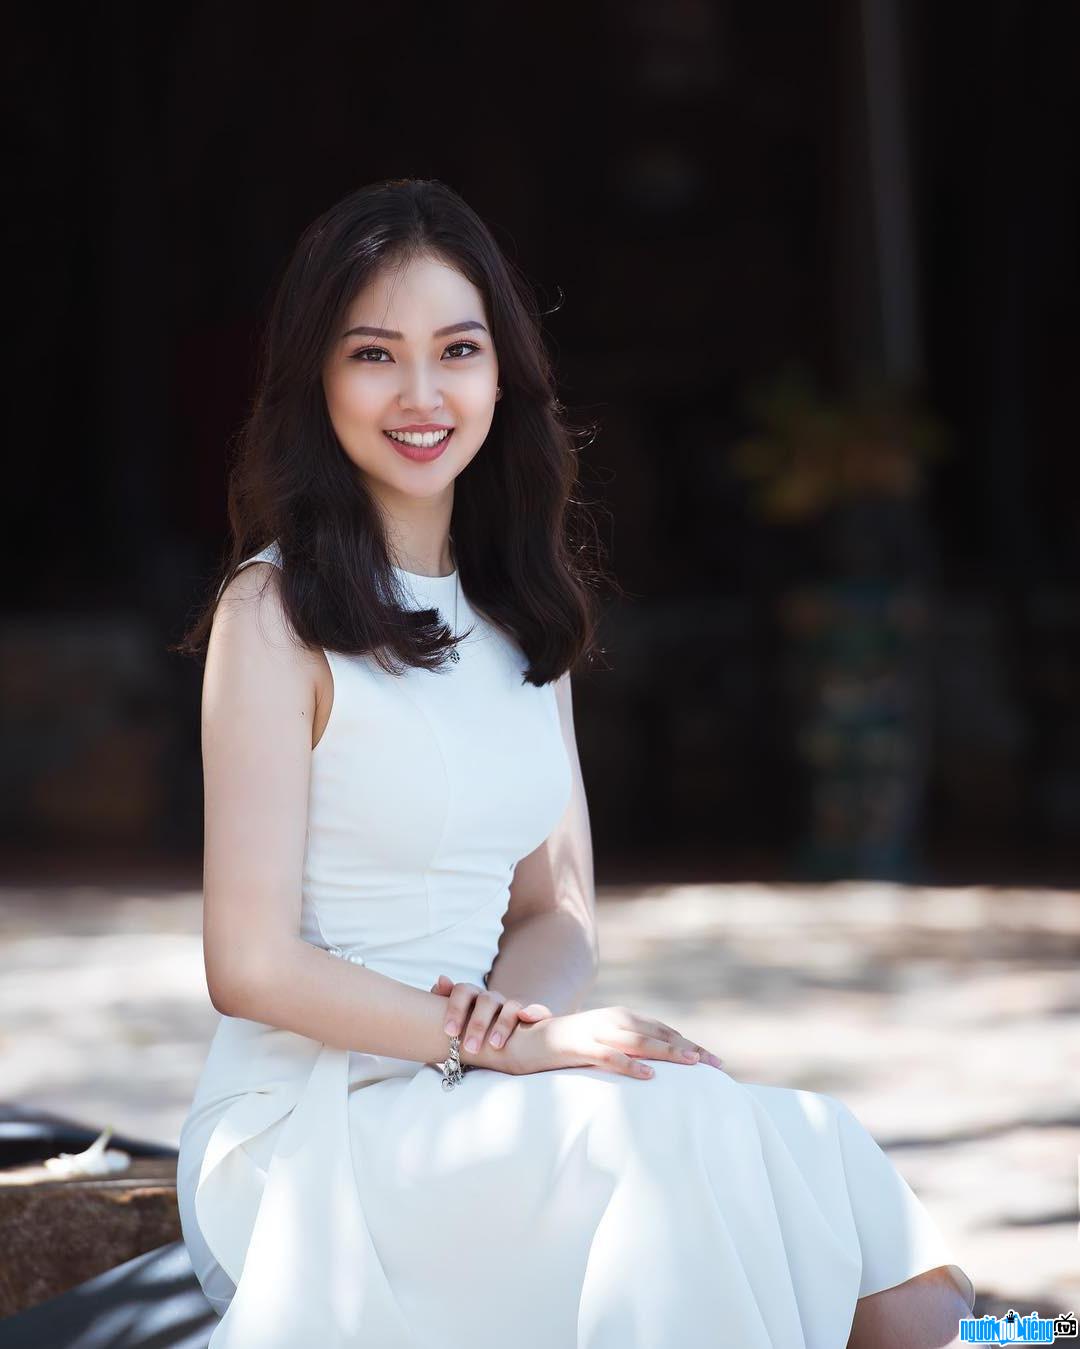 Cận cảnh nhan sắc xinh đẹp của hot girl Phạm Ngọc Khánh Linh